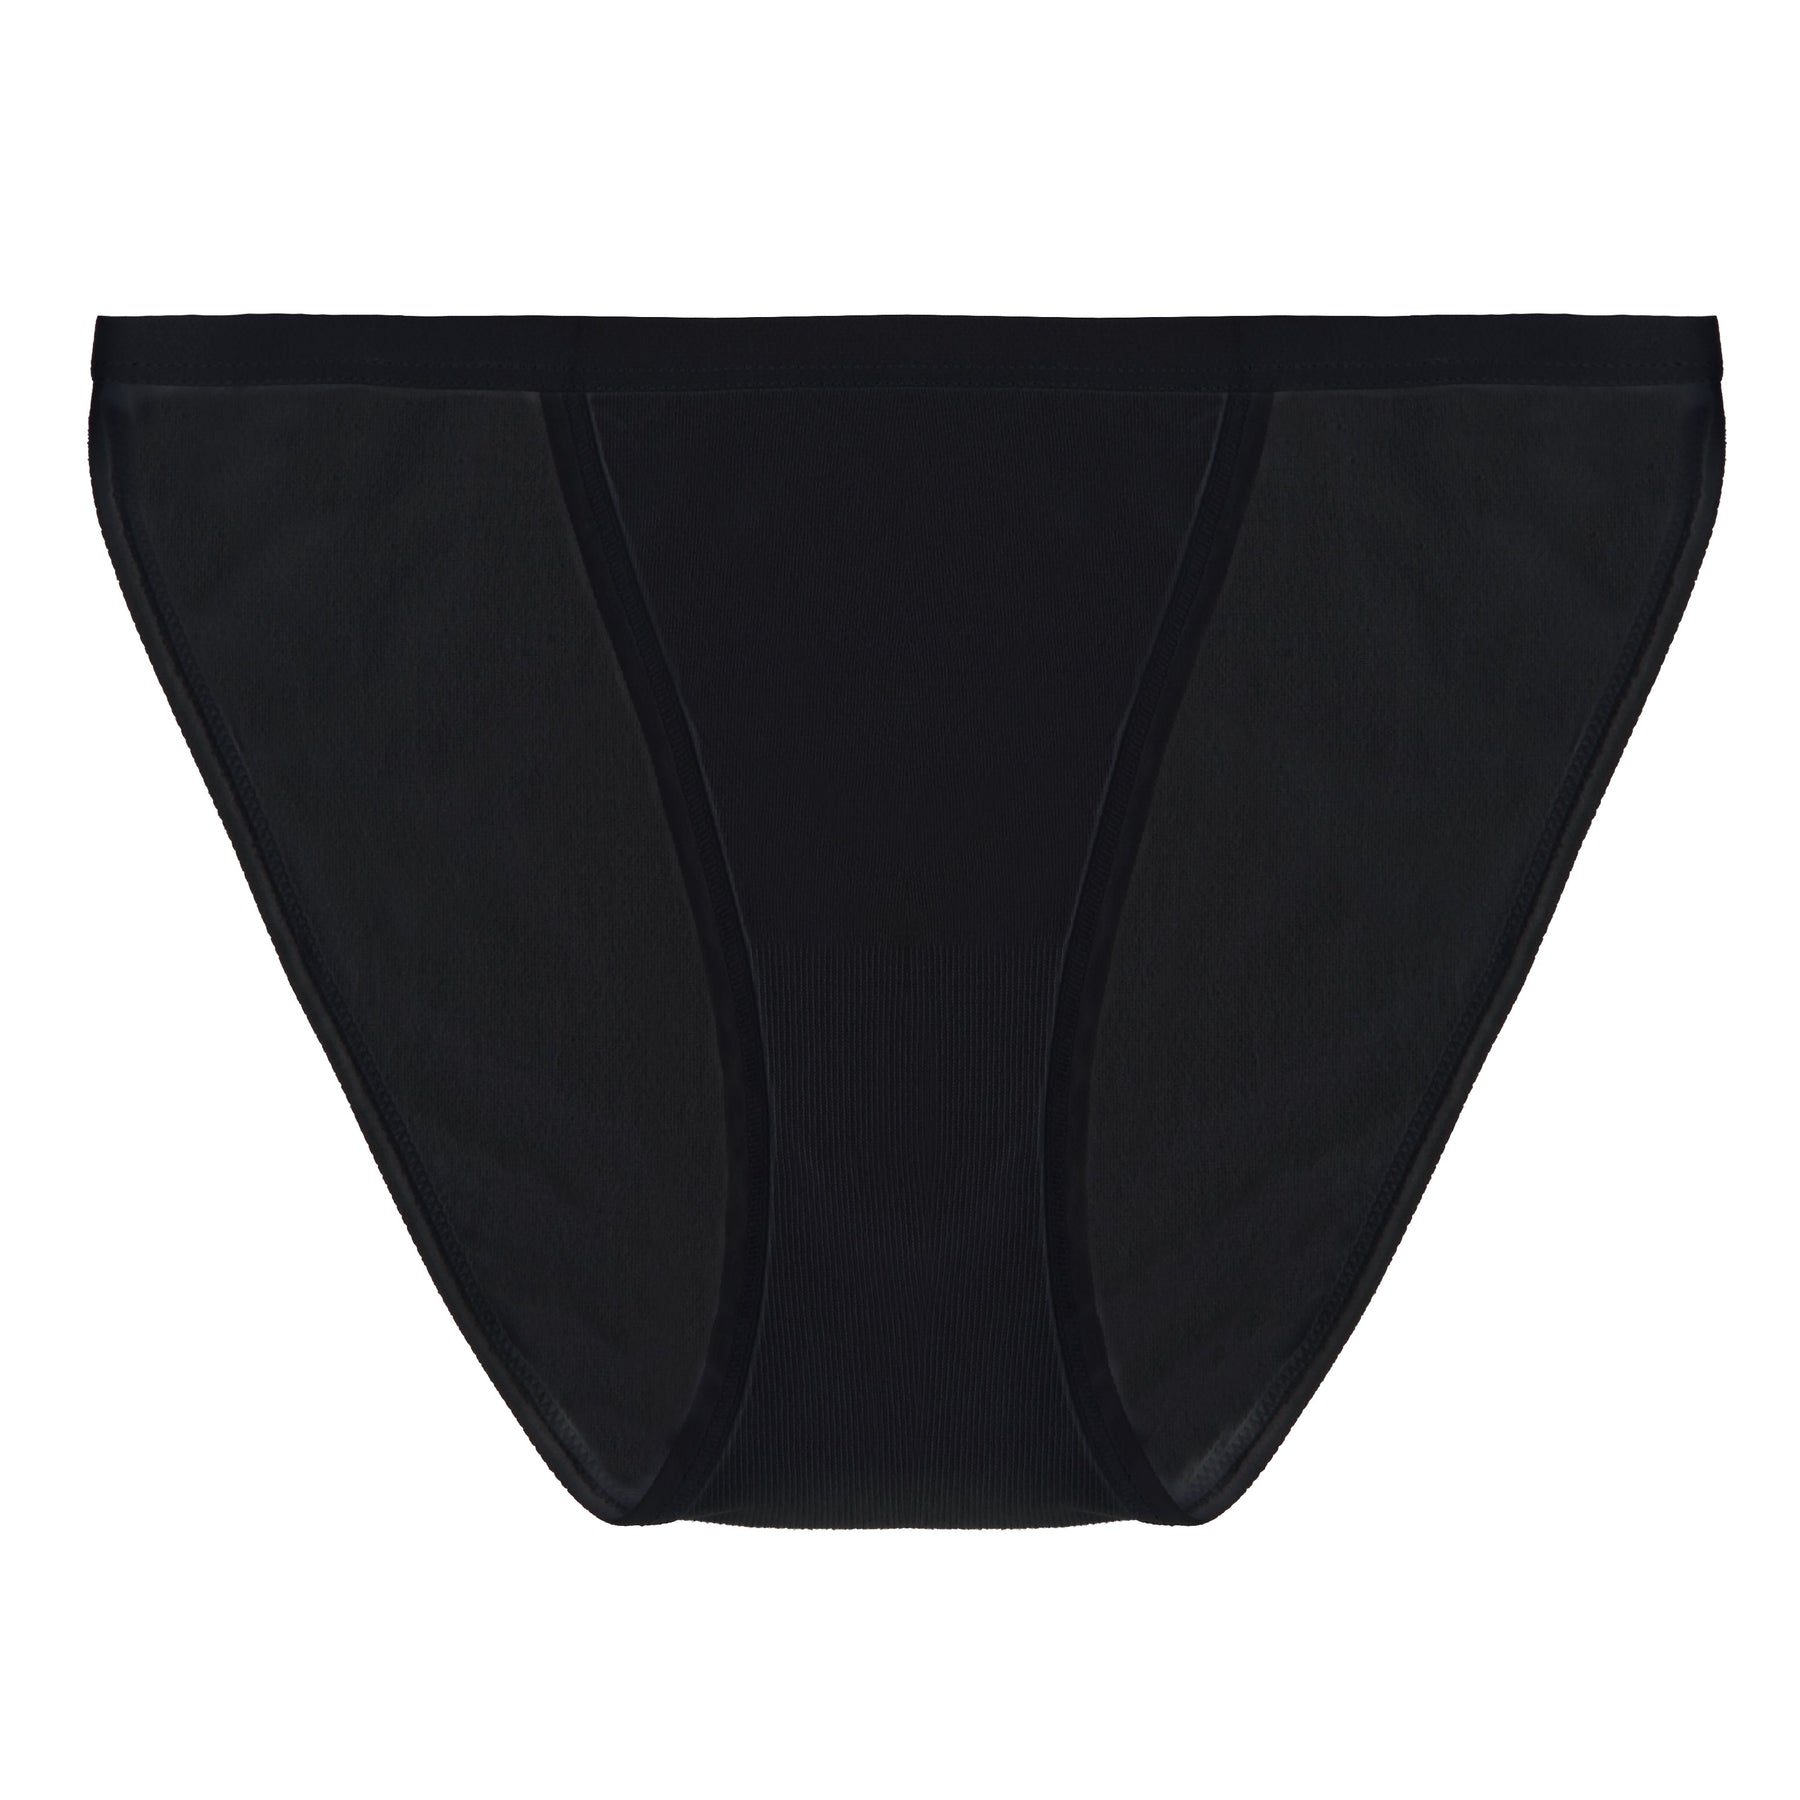 Women's Underwear – Spun Bamboo